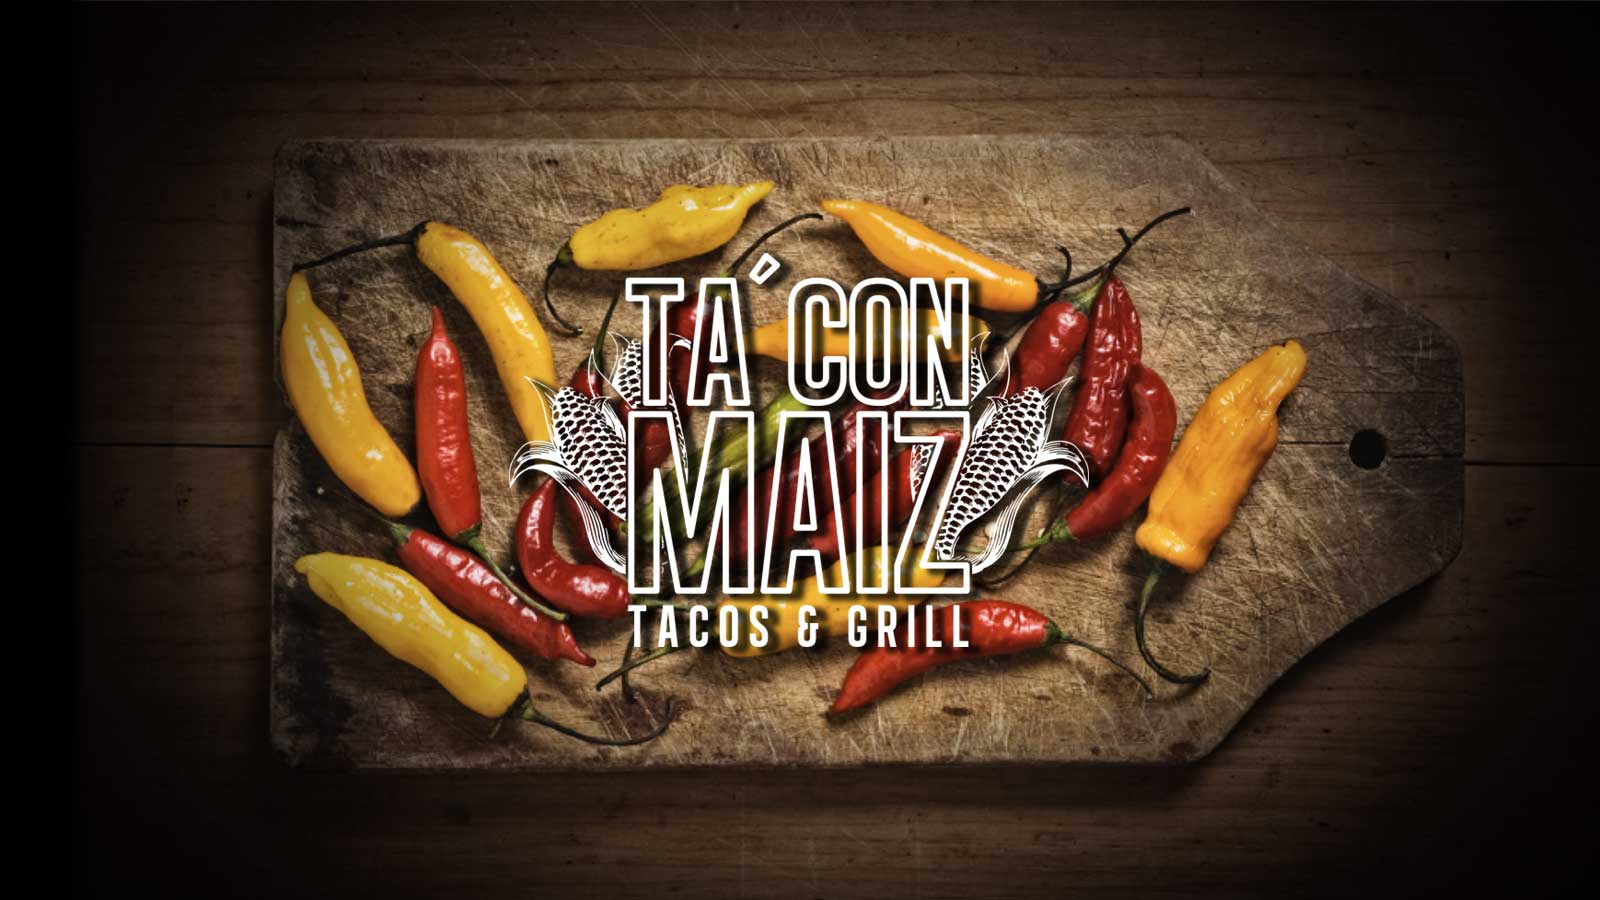 Tacon'Maiz Branding - Dosmaquinas